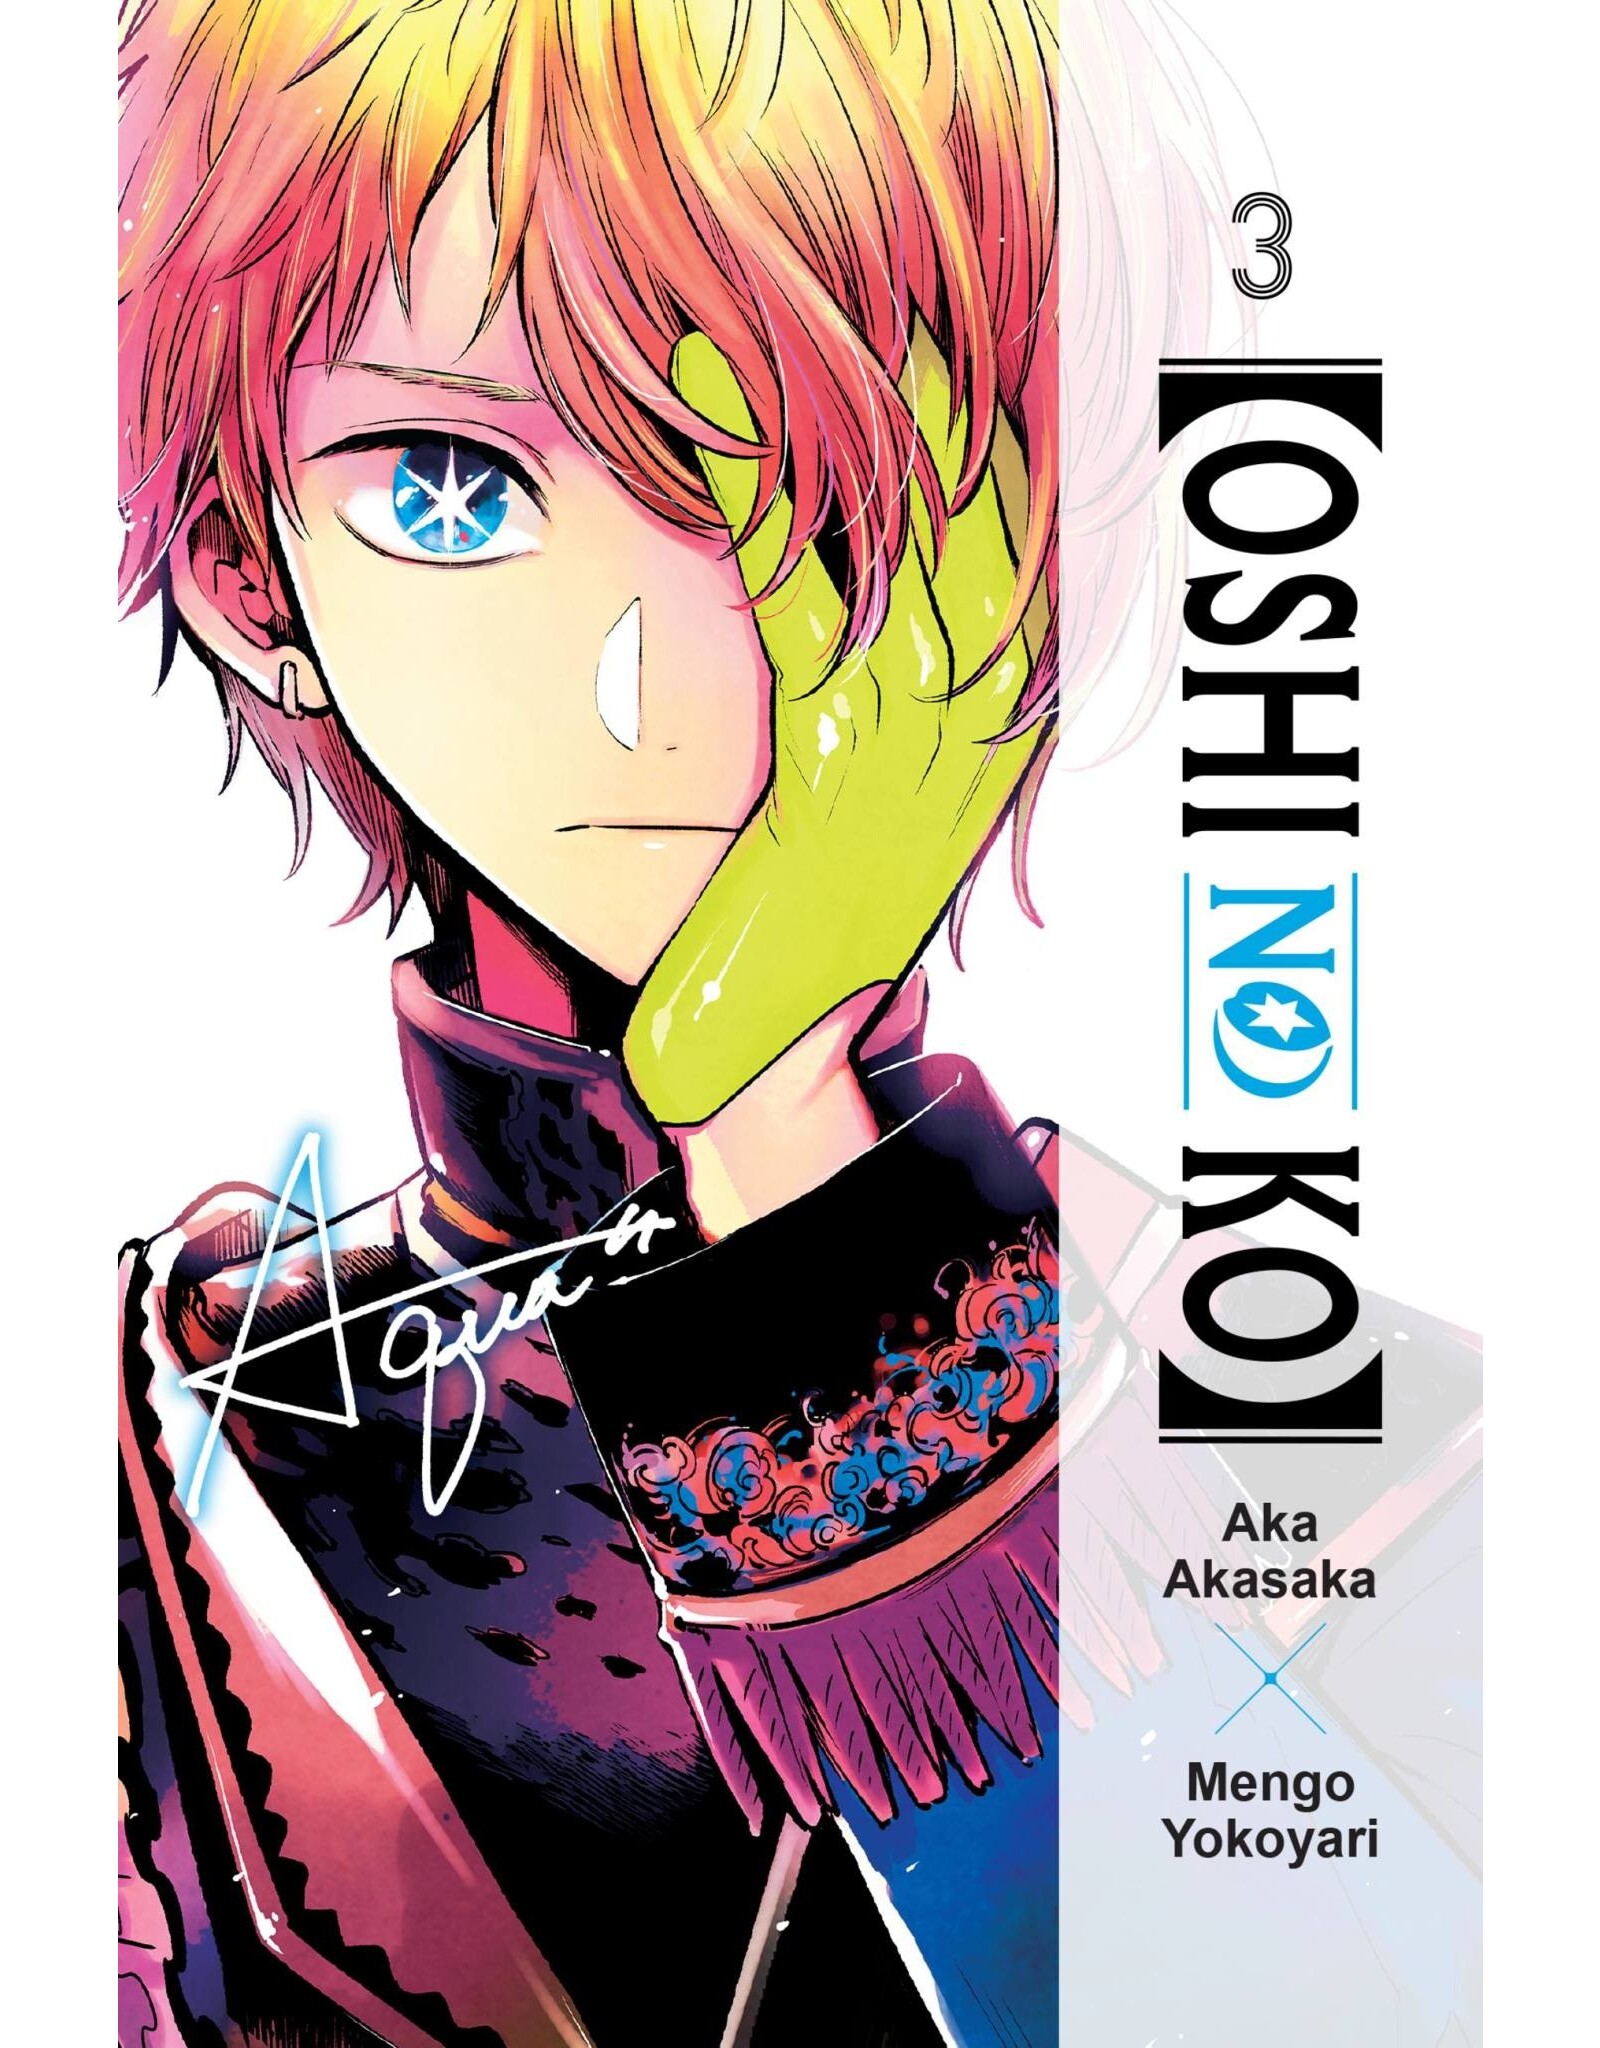 Oshi No Ko 03 (English) - Manga